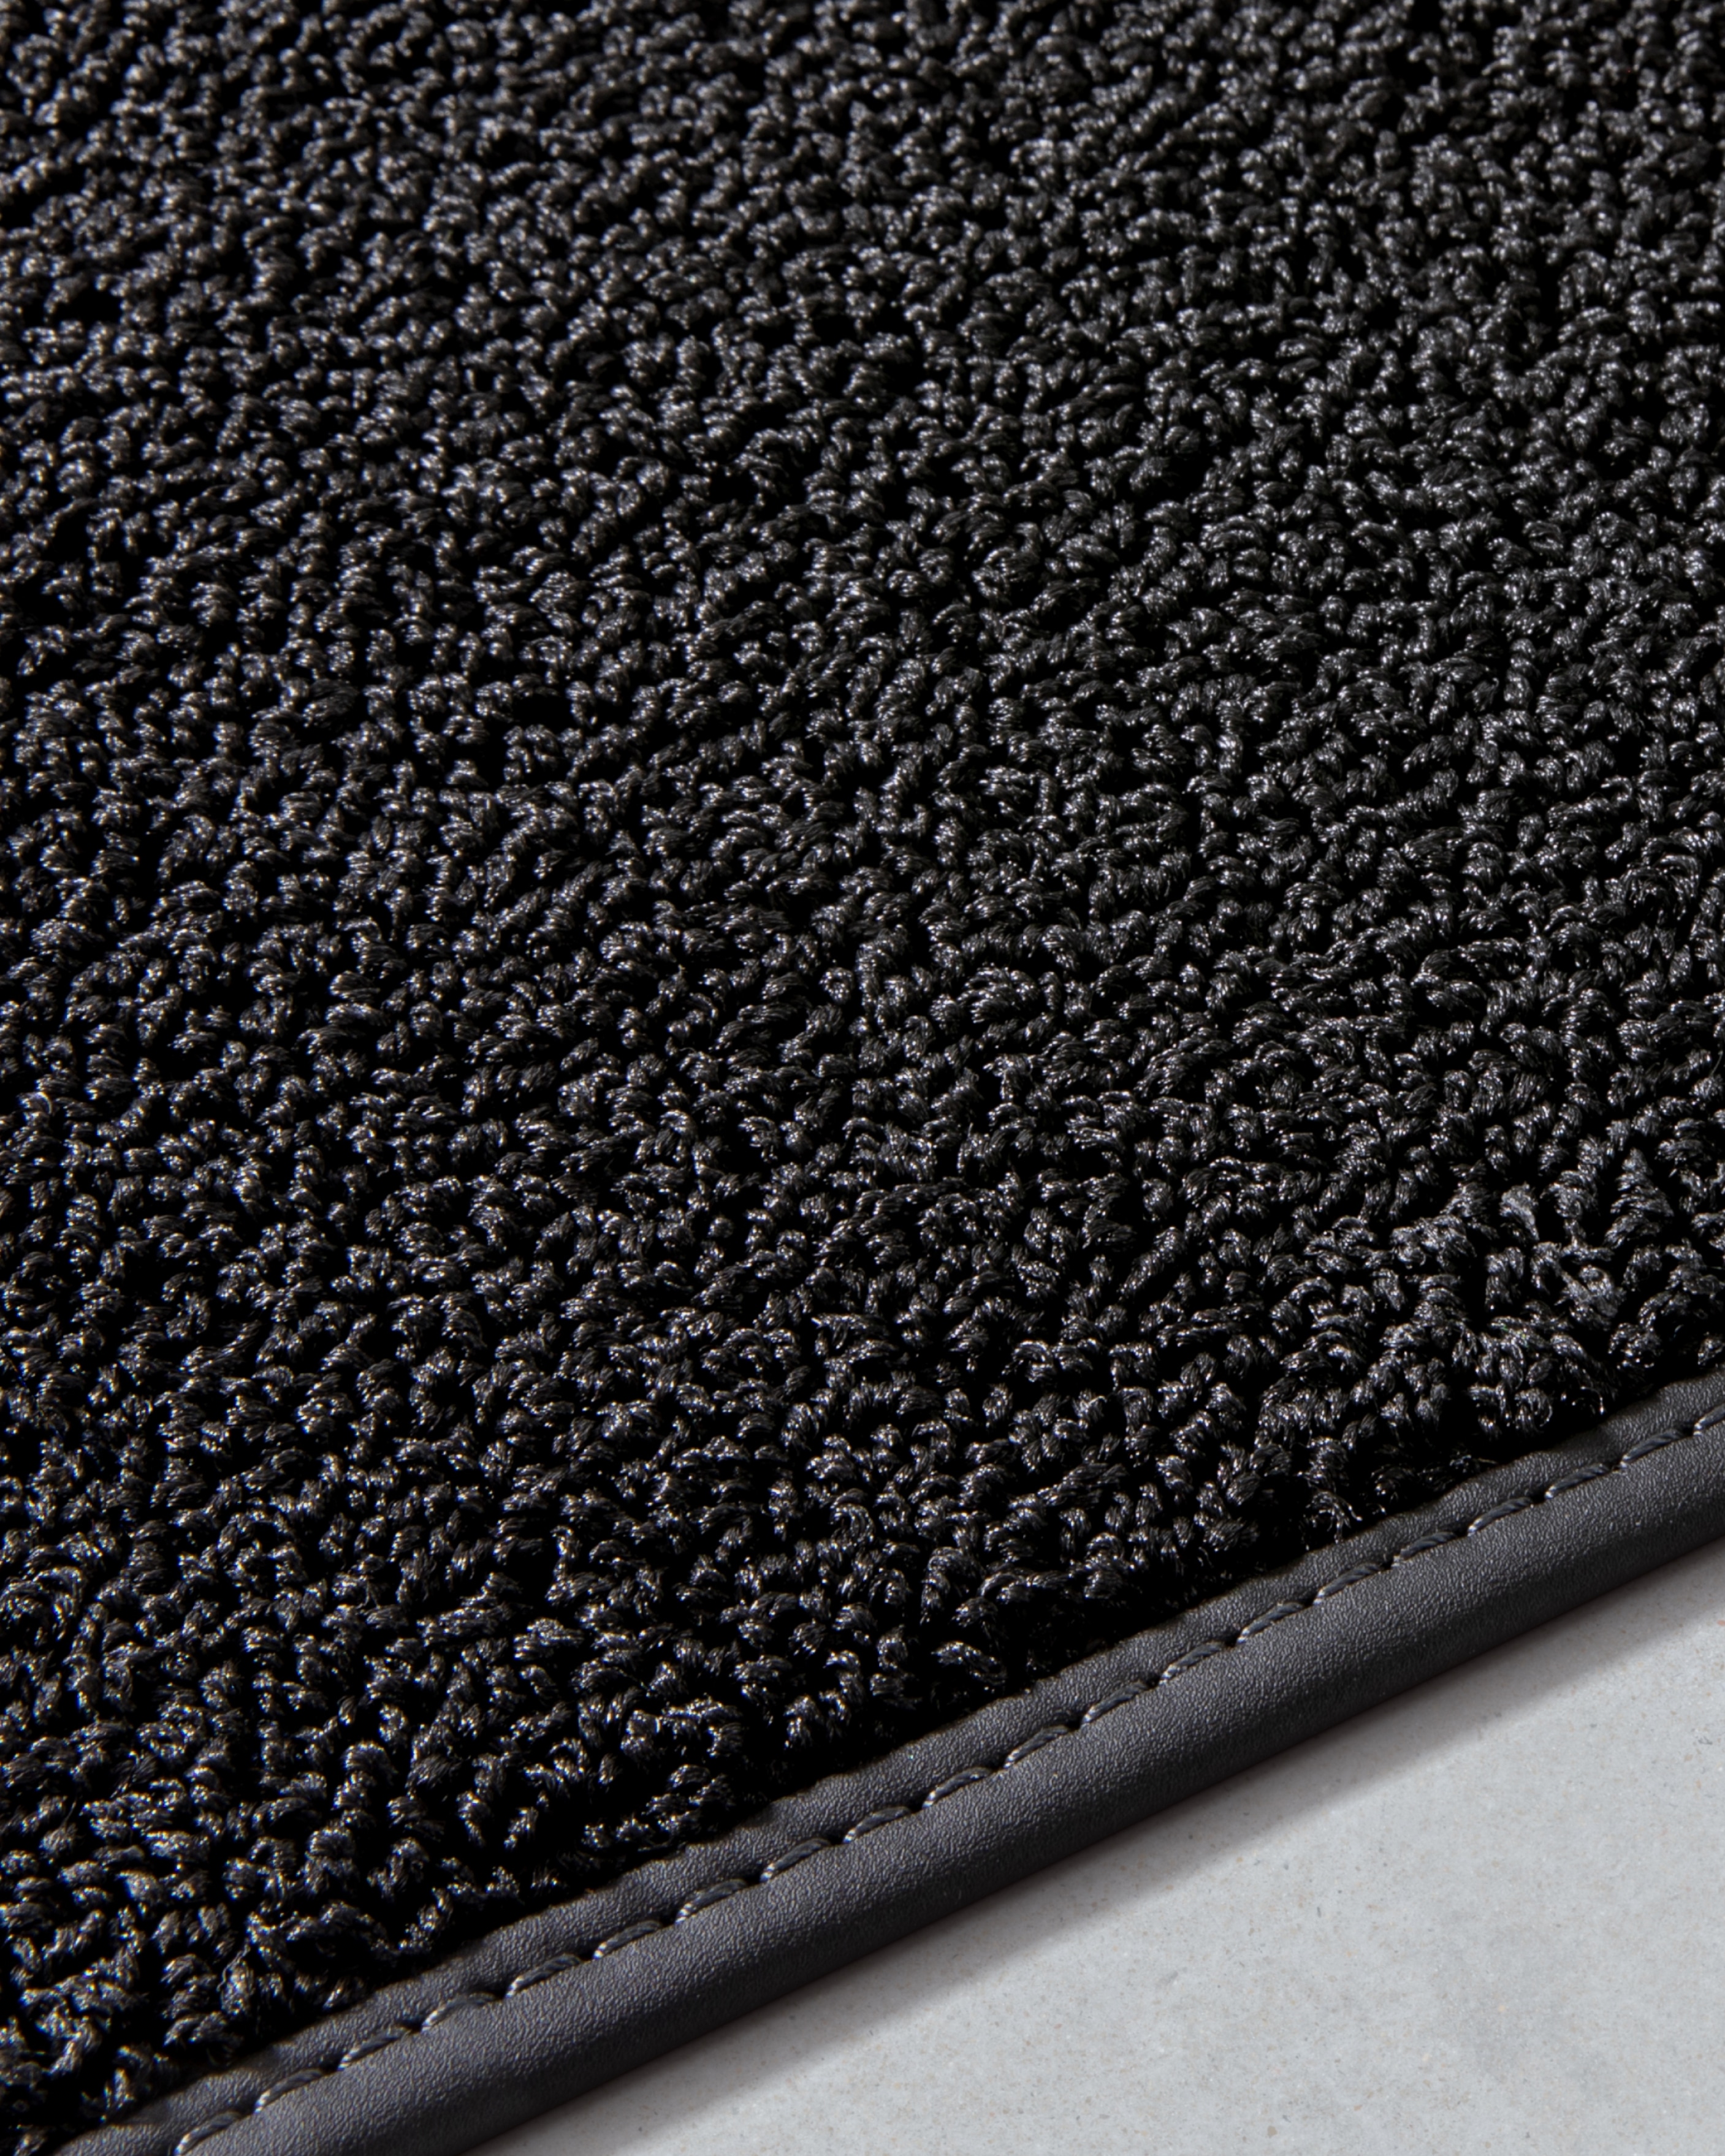 Зображення текстильних килимків Volvo EX30, виготовлених частково з рибальської сітки, створених під натхненням від крапель дощу.